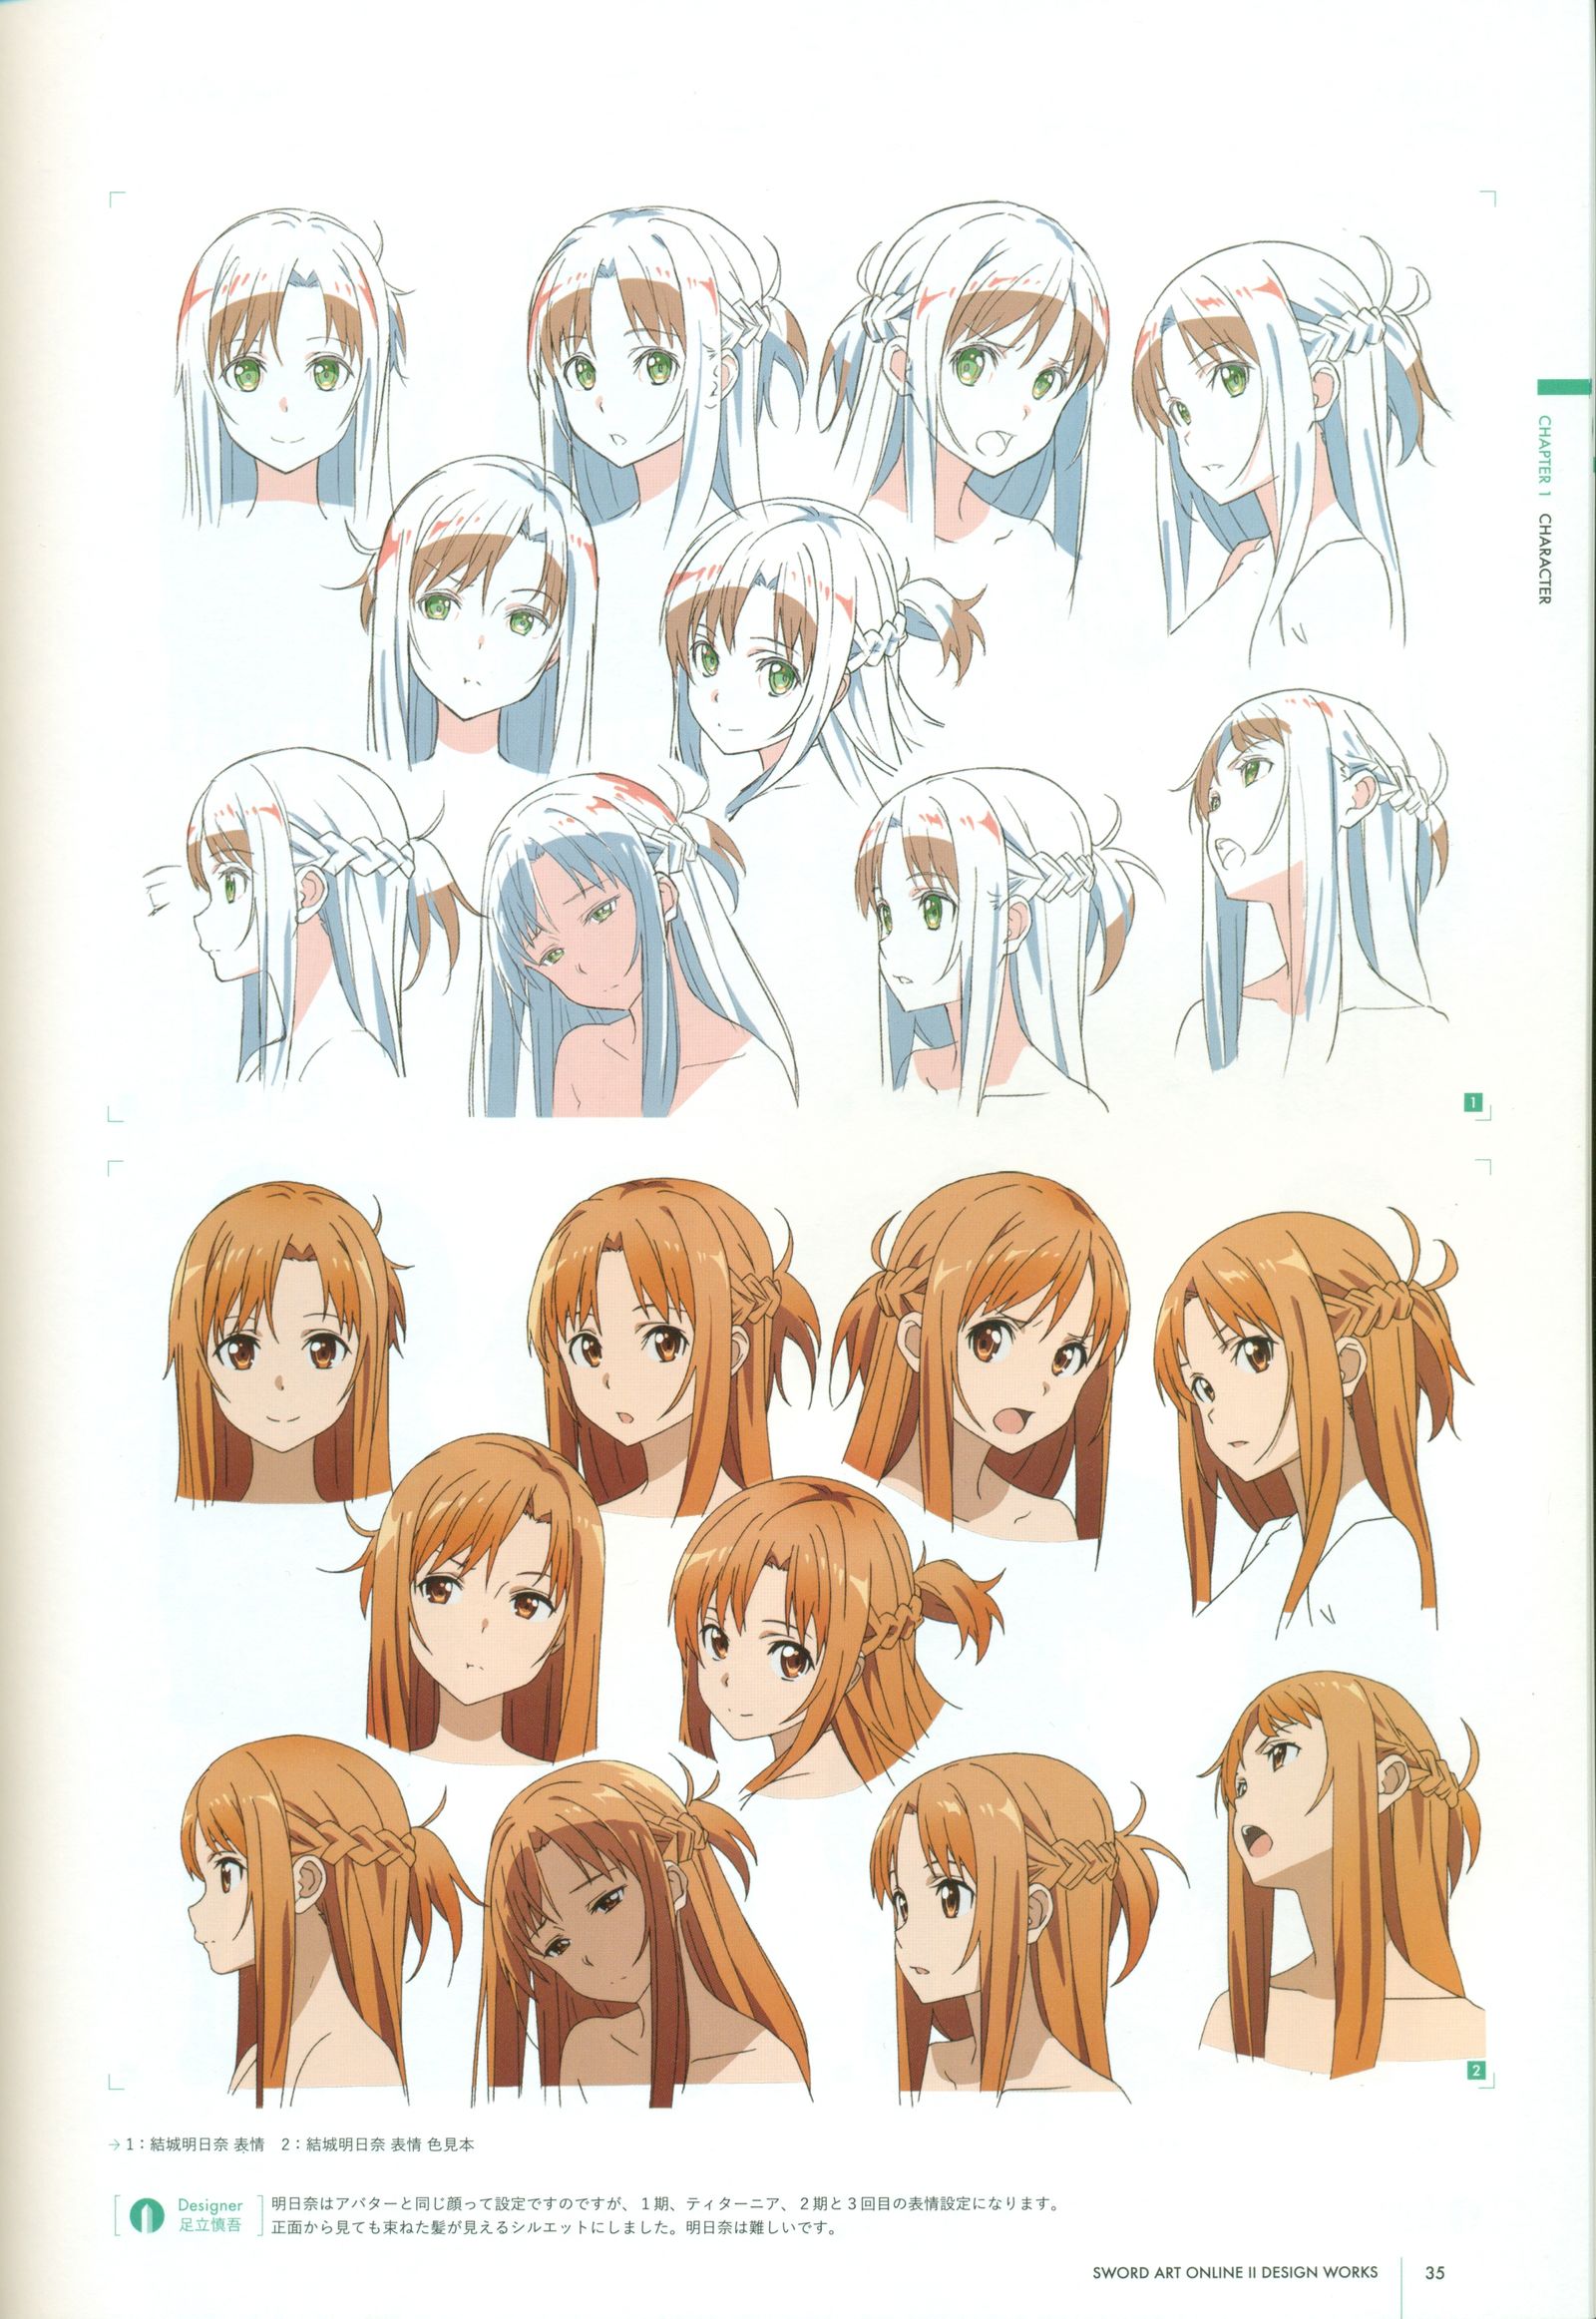 刀剑神域第二季人物设定 Asuna亚丝娜插画图片壁纸